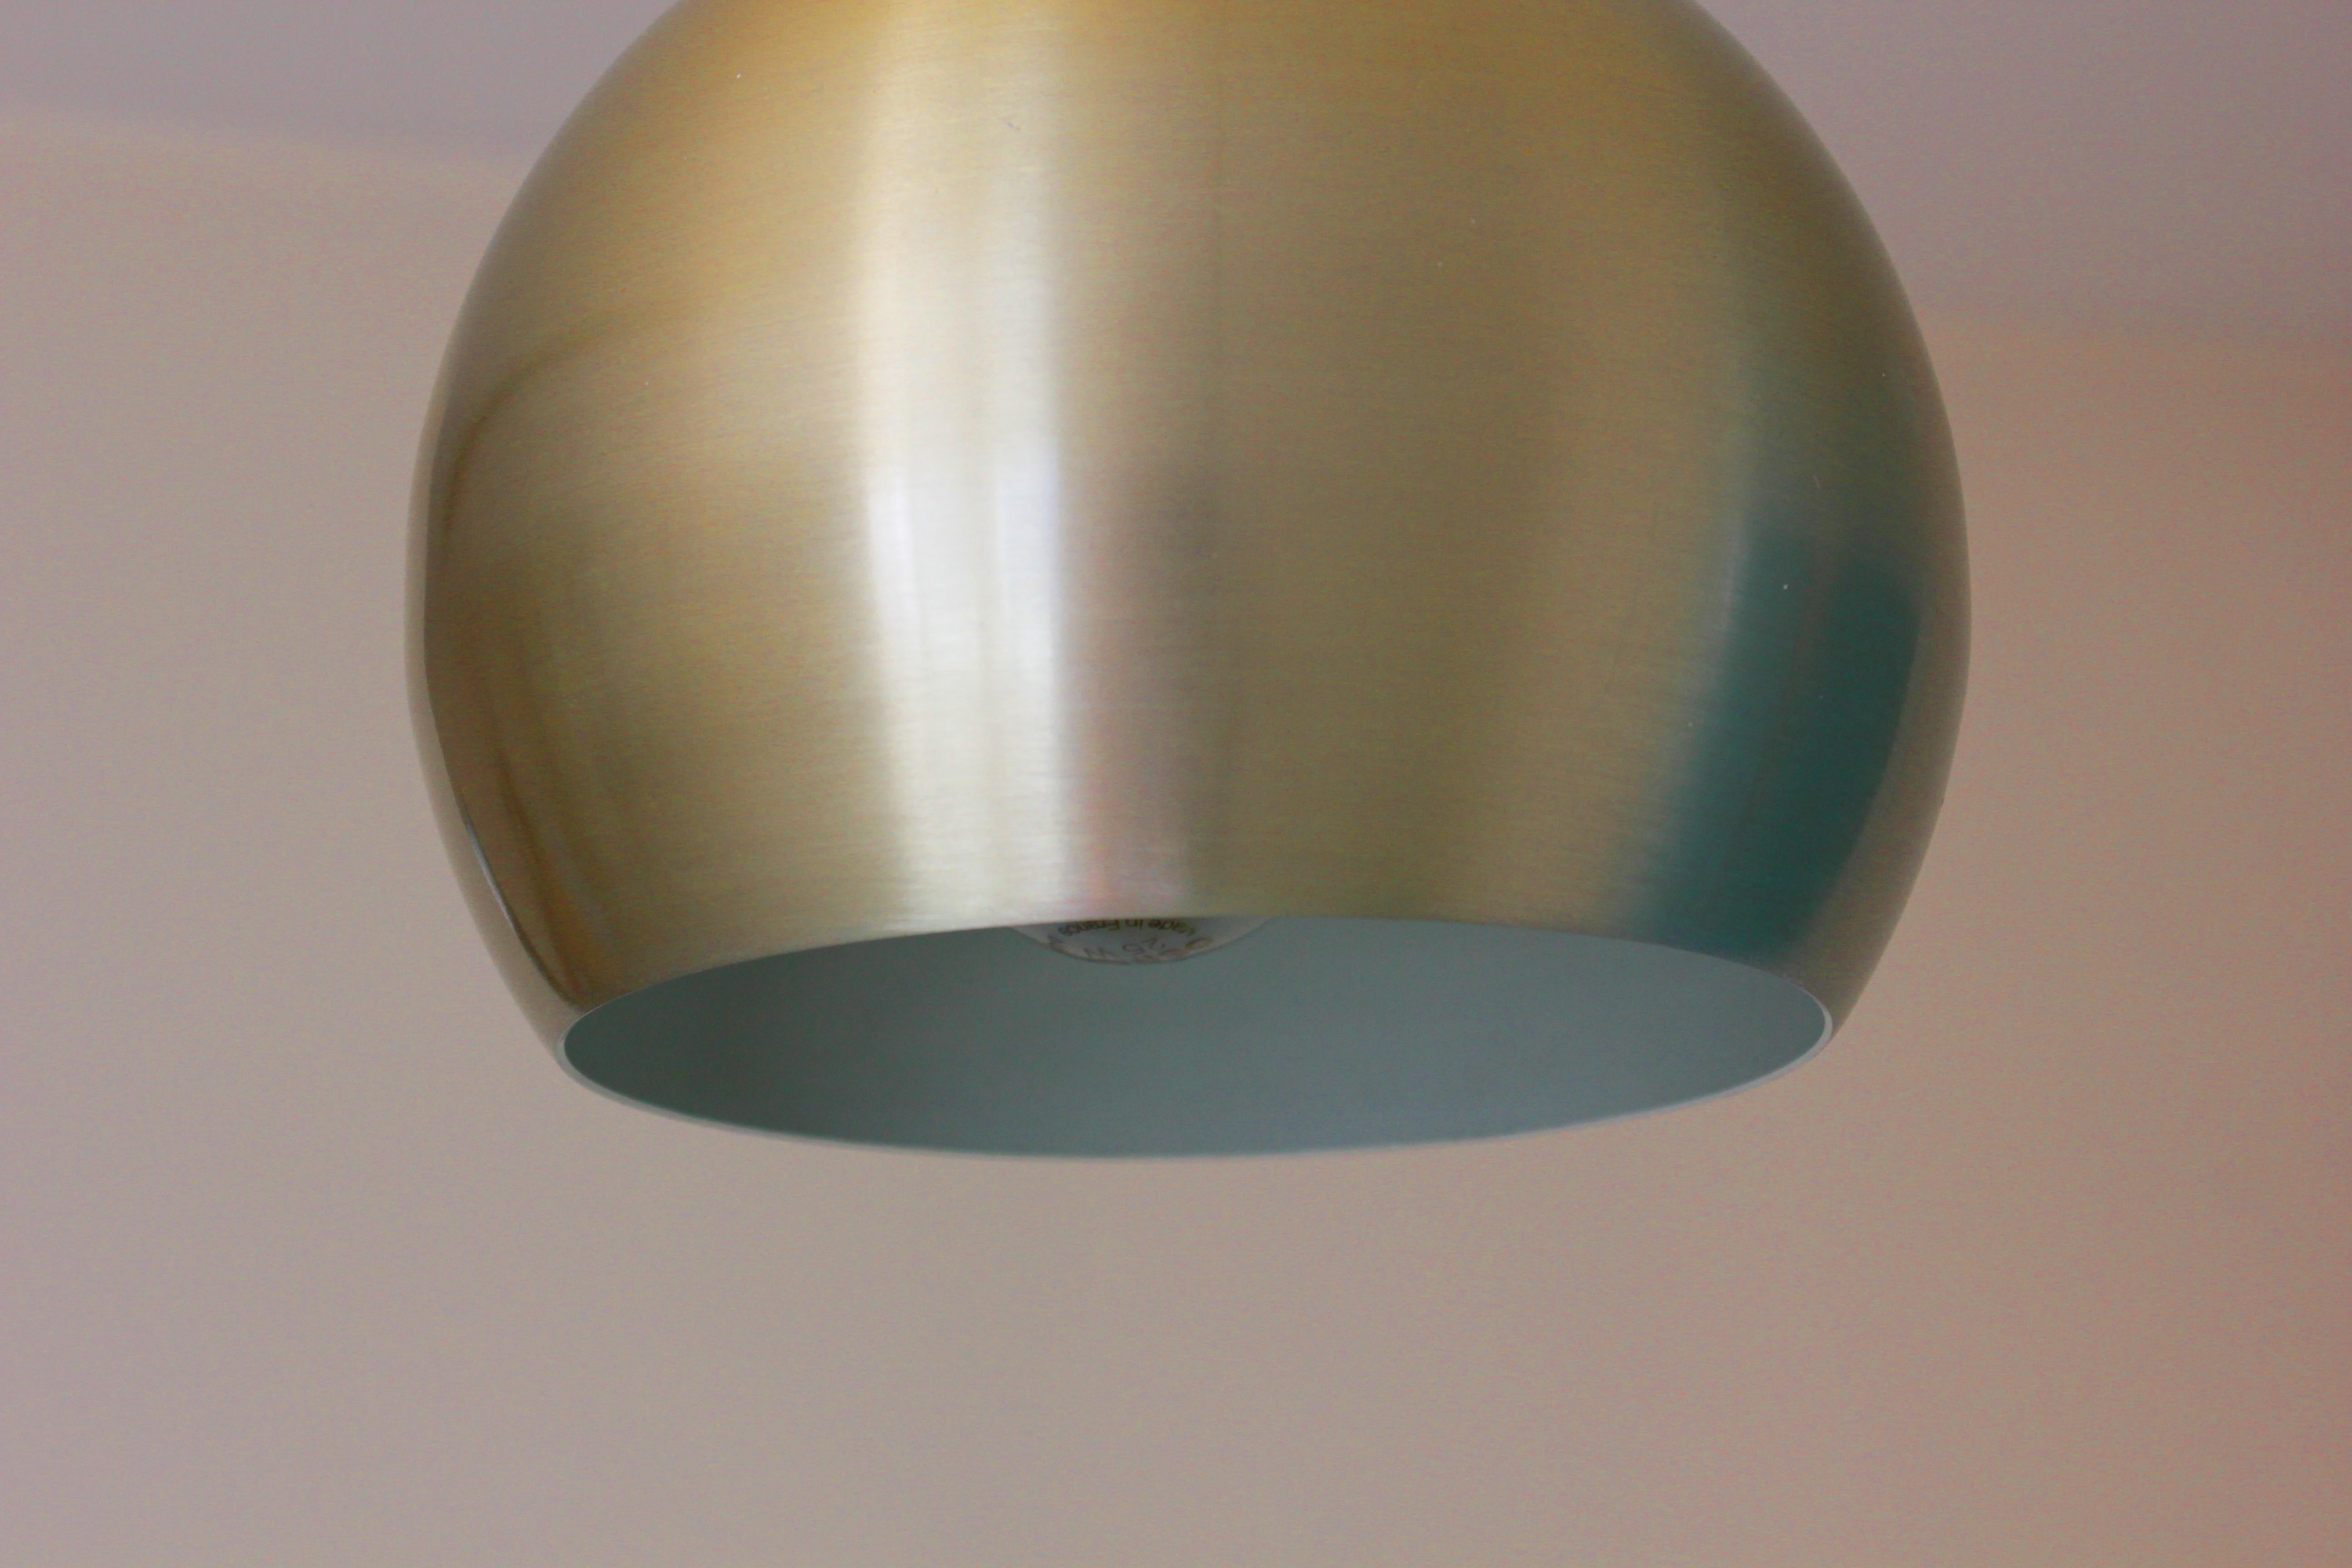 Ceiling lamp
Probably Verner Panton
Origin: Denmark
Period: 1970s
Material: metal
Color: gold
Dimensions: 20 cm diameter